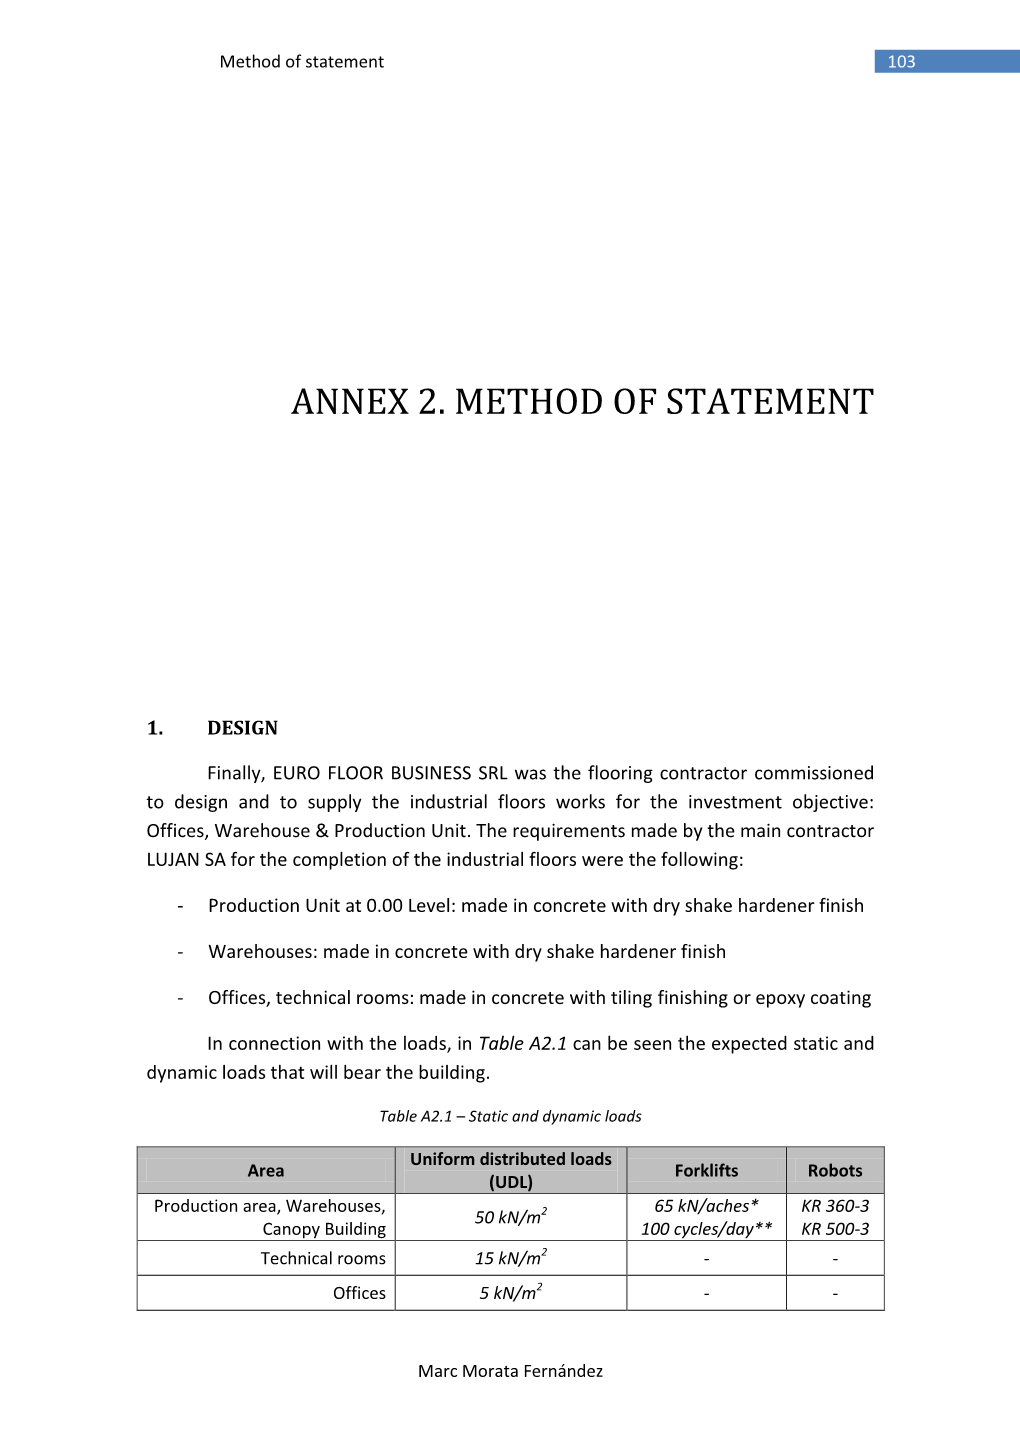 Annex 2. Method of Statement